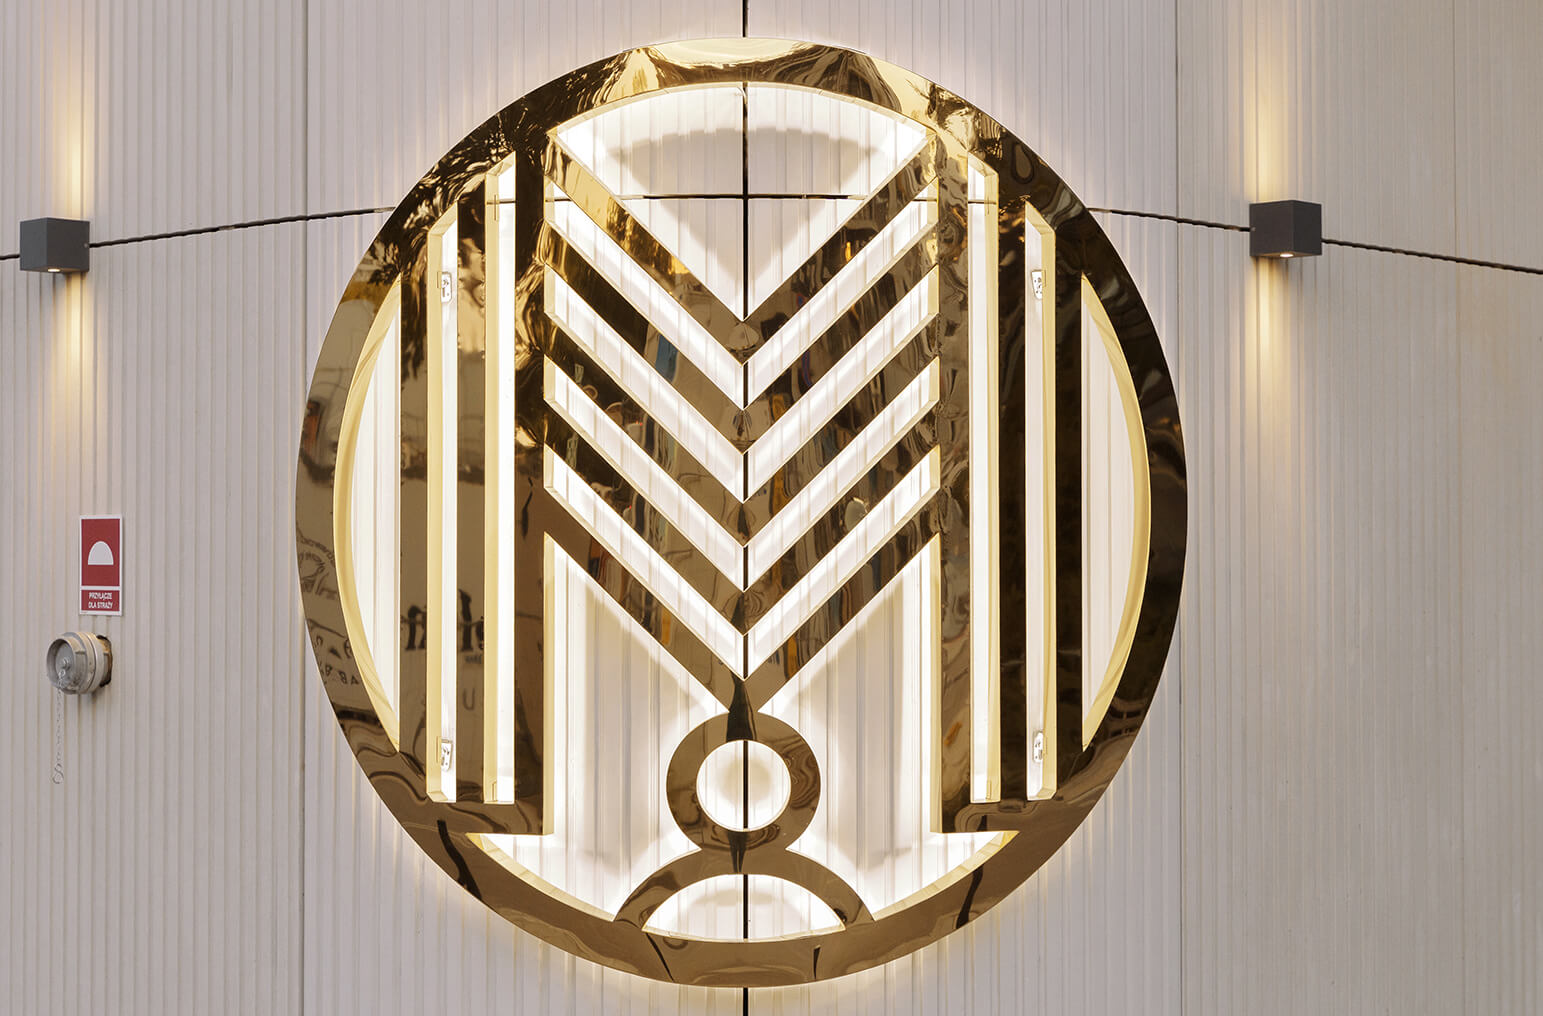 Logo w łuku - Logo świecące tyłem na ściane, w łuku zaokrąglone, wykonane z blachy nierdzewnej.